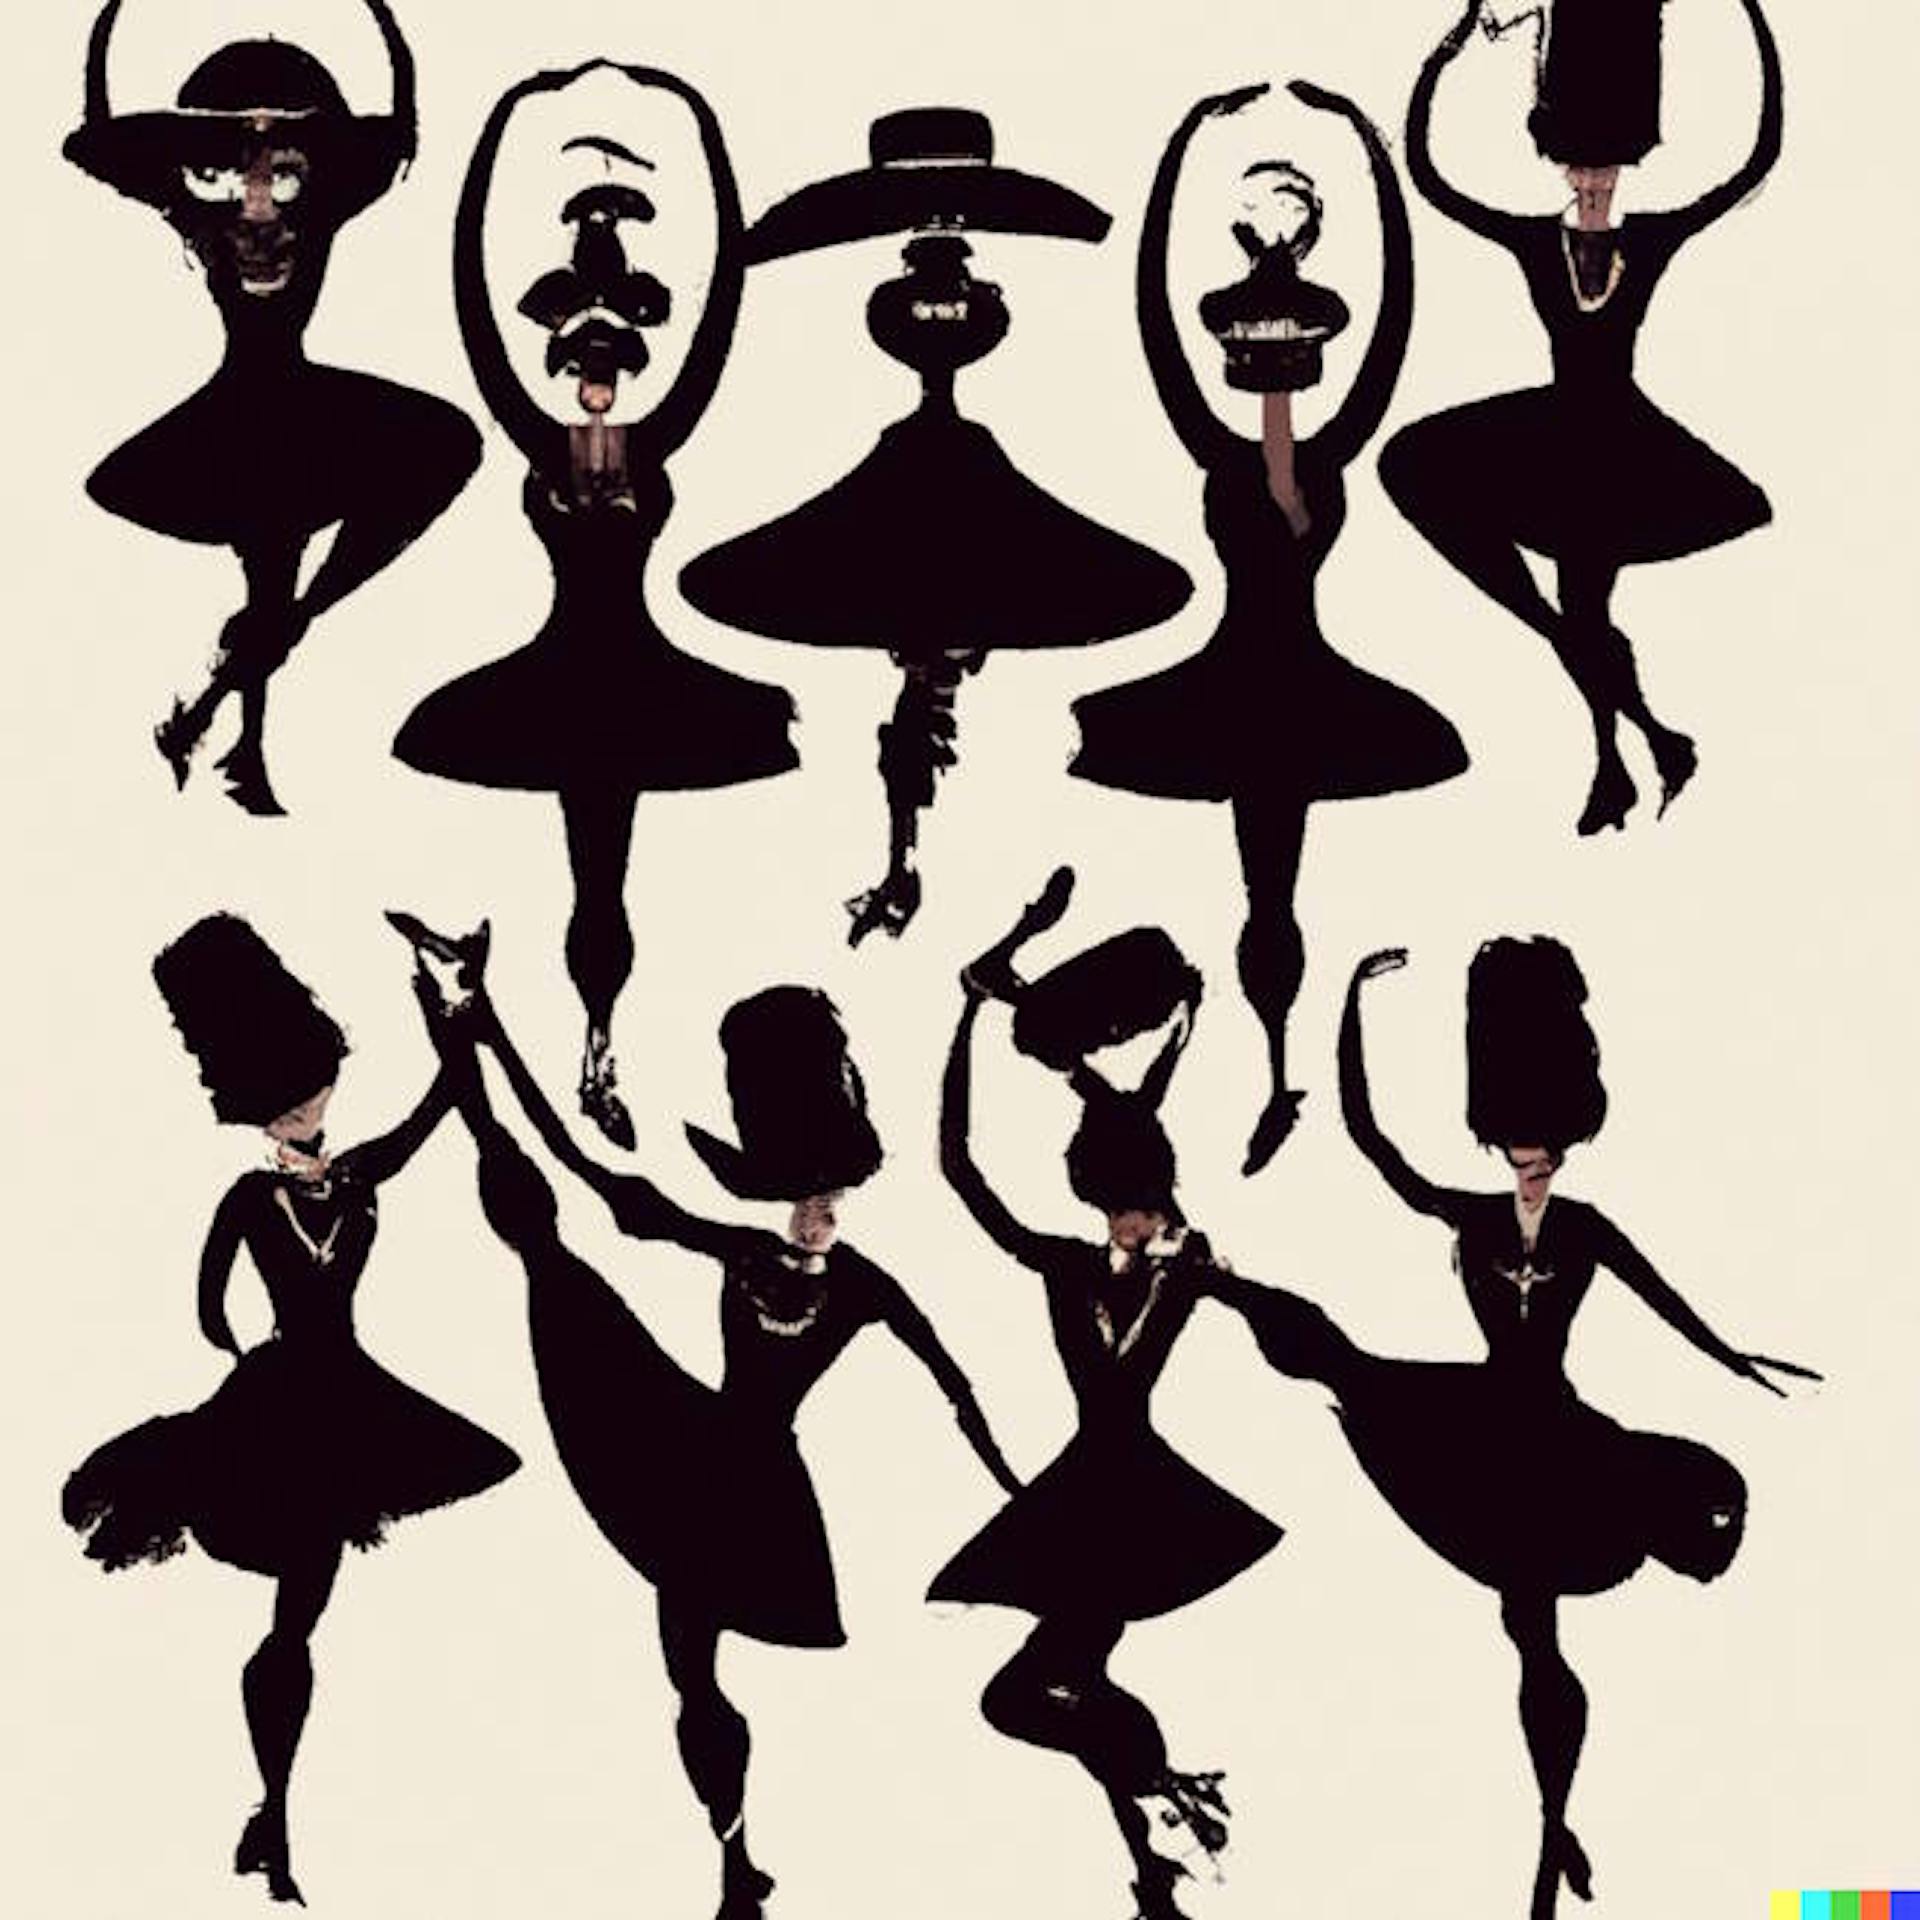 nine ladies dancing